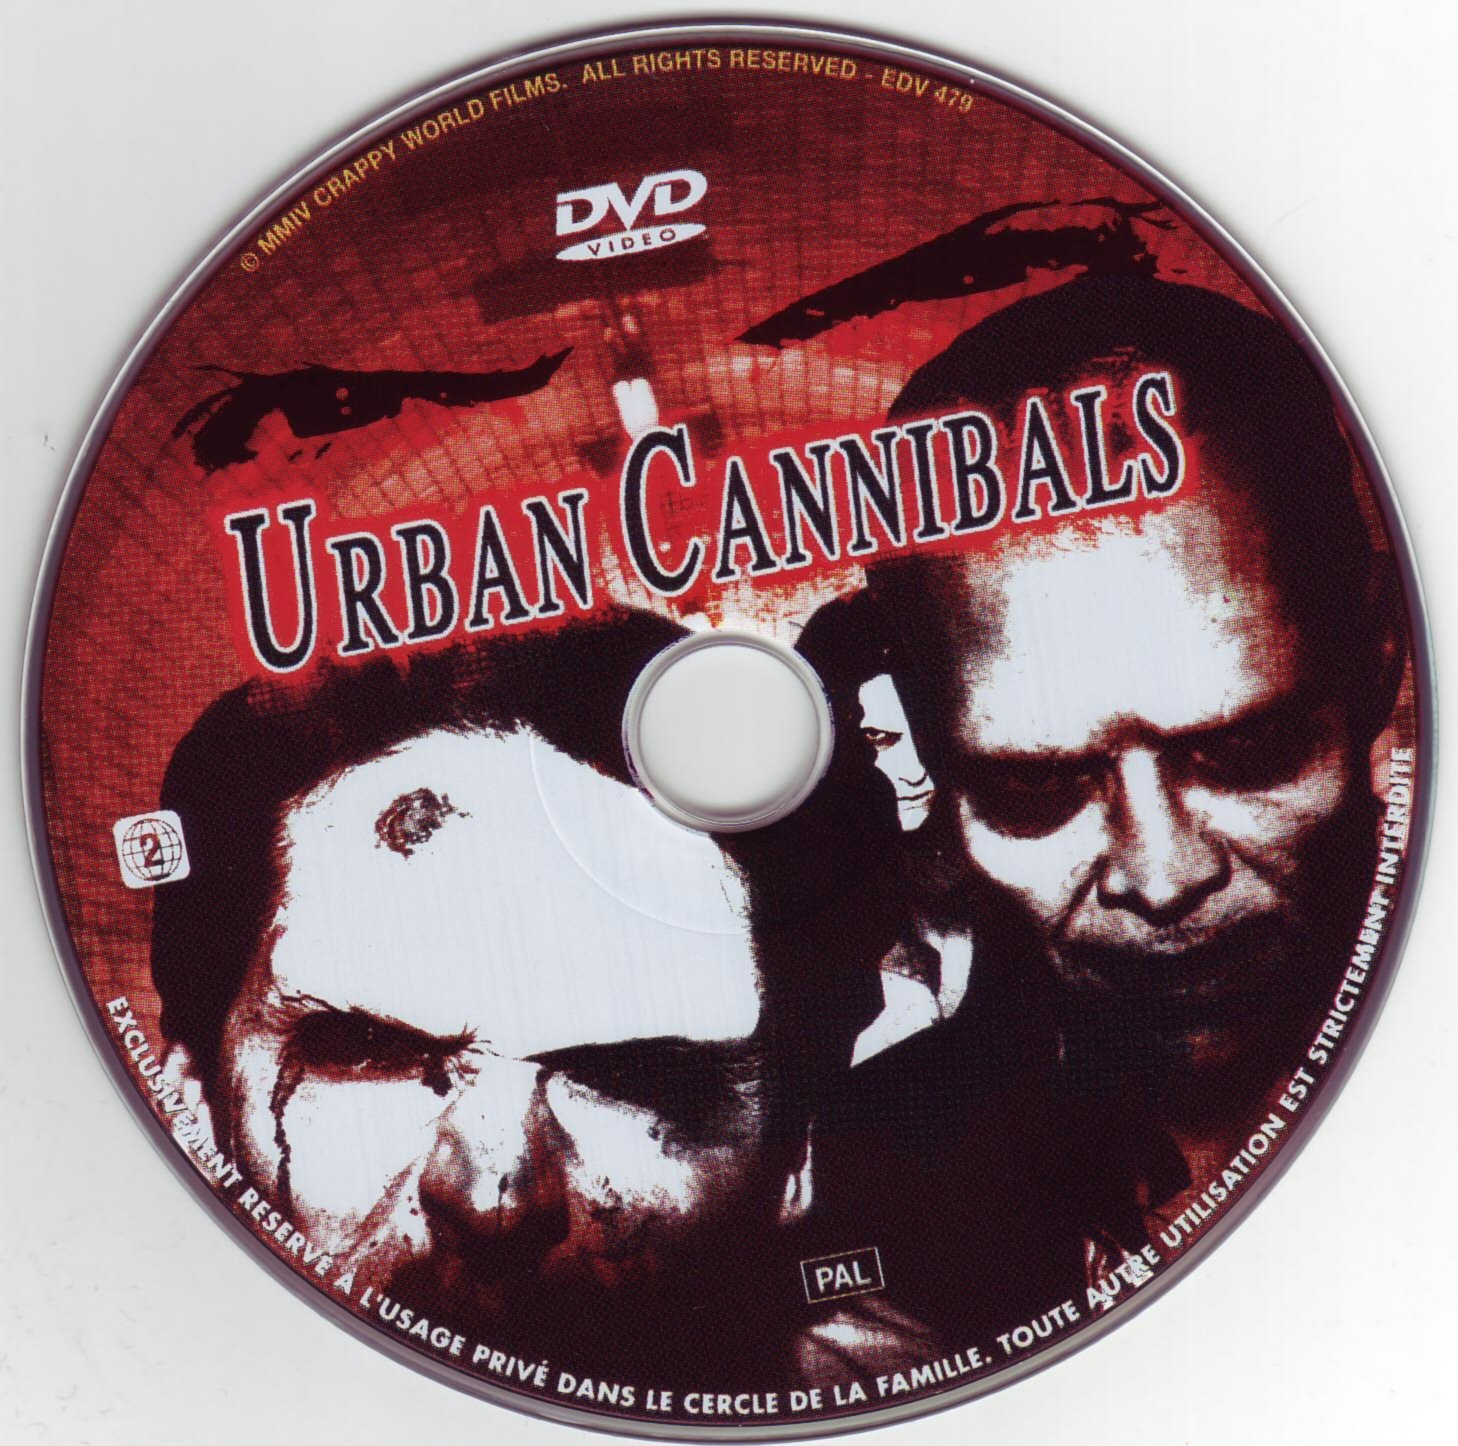 Urban cannibals